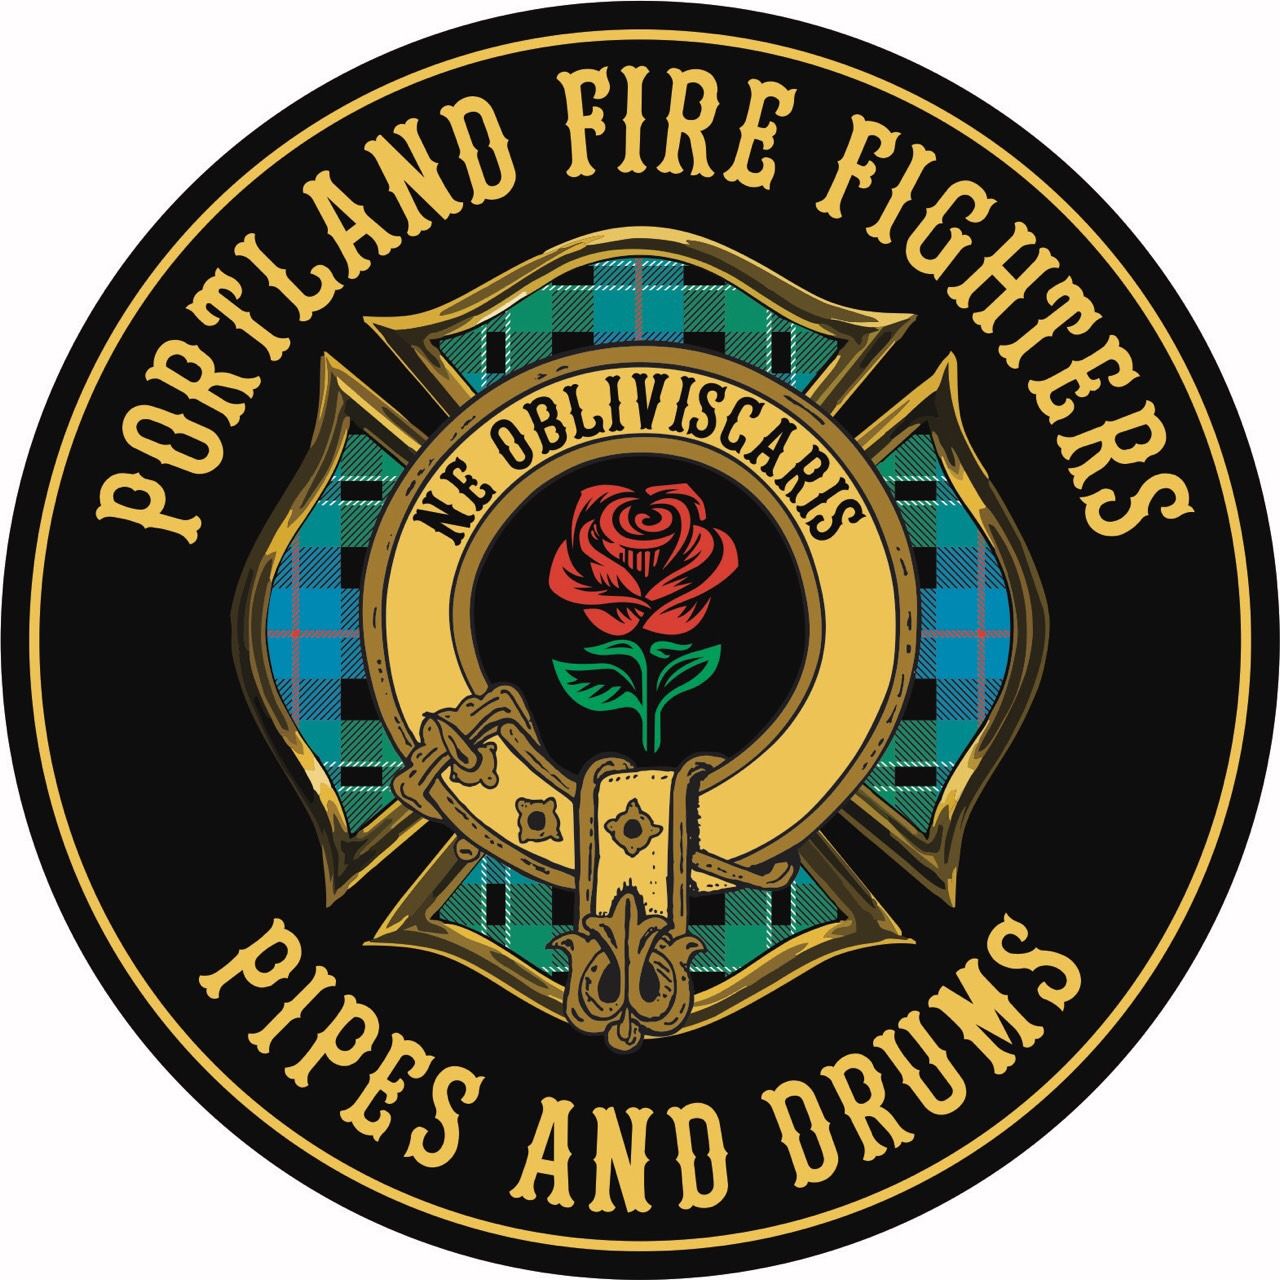 (c) Portlandfirefighterspipesanddrums.com